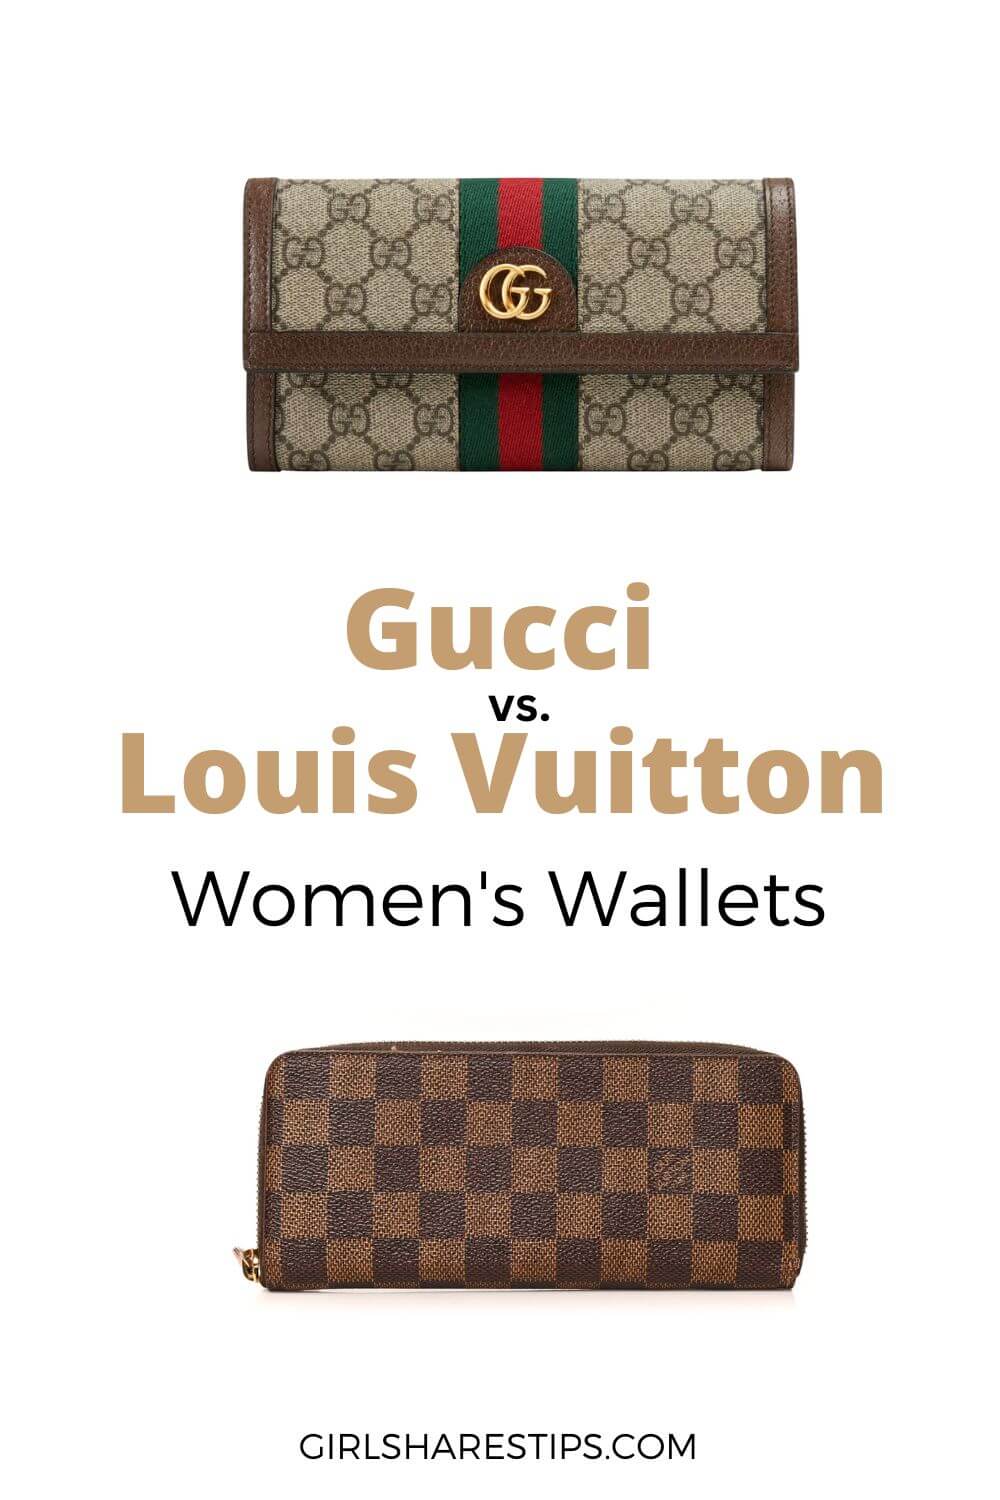 Gucci vs Louis Vuitton wallet